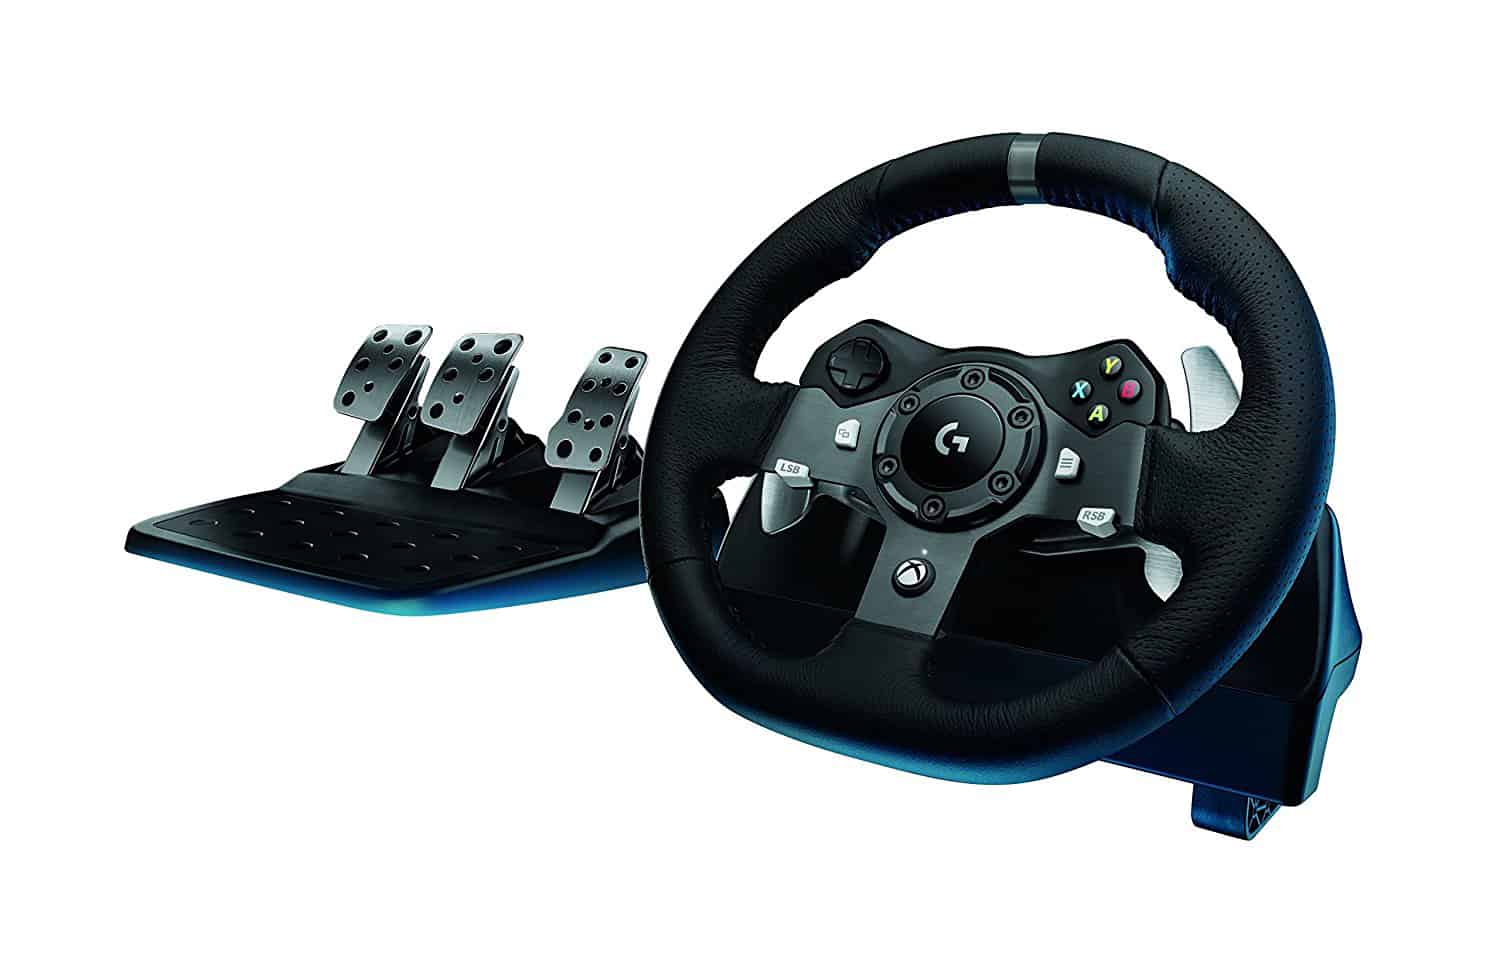 Logitech G920 driving force racing wheel - Logitech G920 review